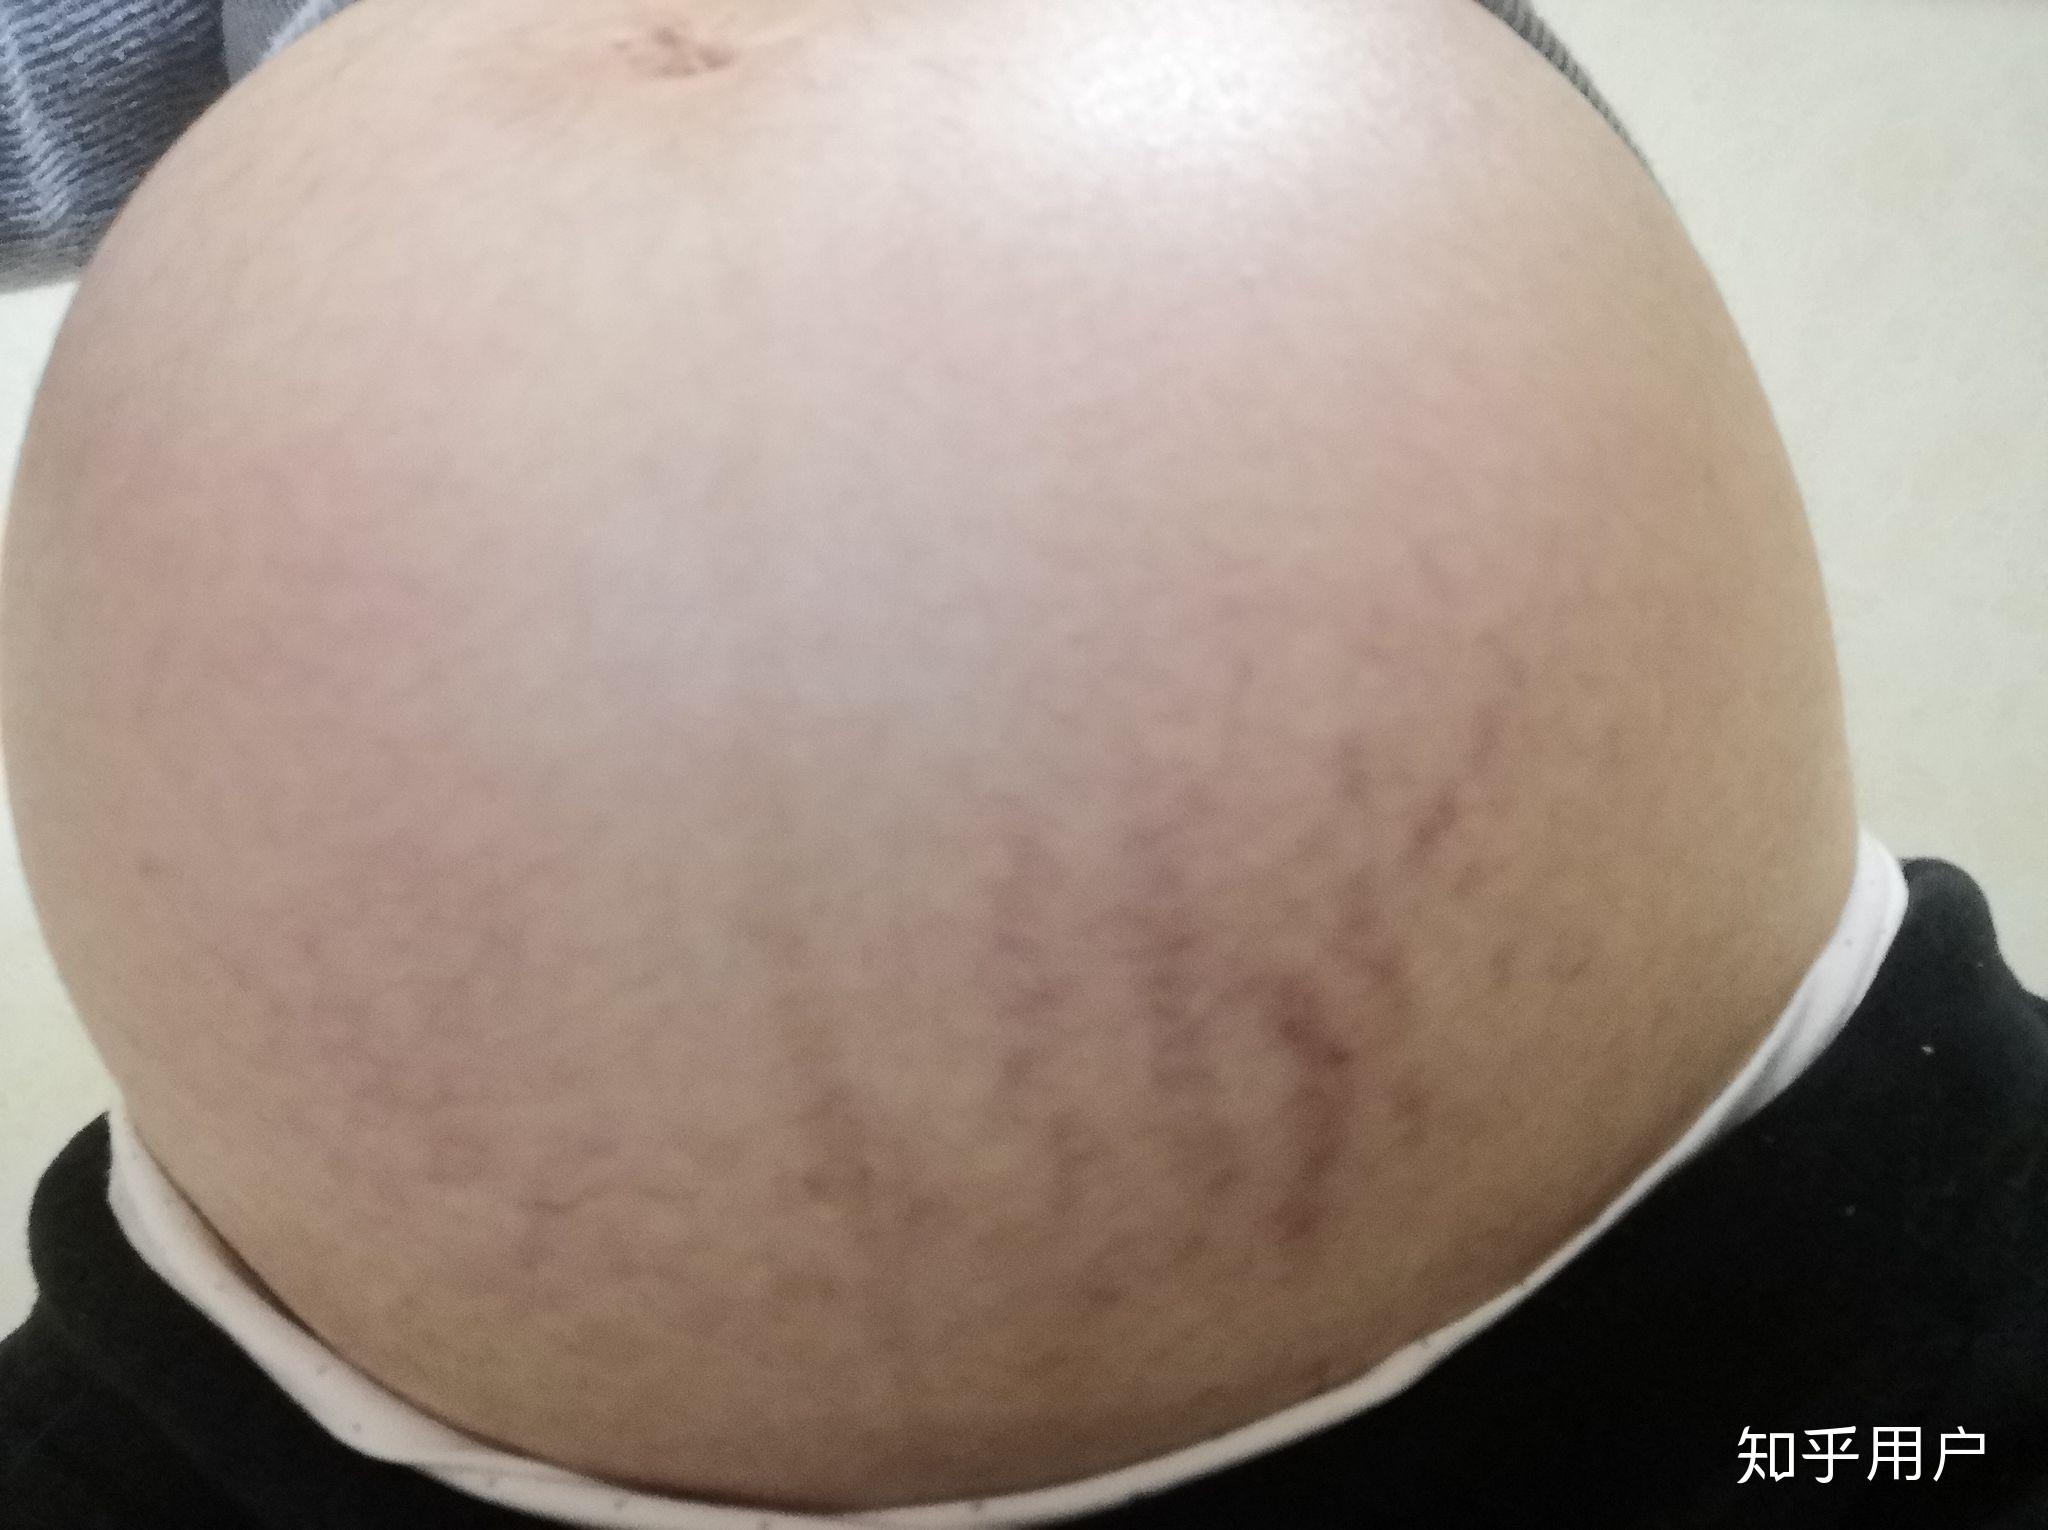 29周早产儿全身插满管子，哭起来胳膊都在颤抖，看着好心疼 - 早产 - 蓝灵育儿网